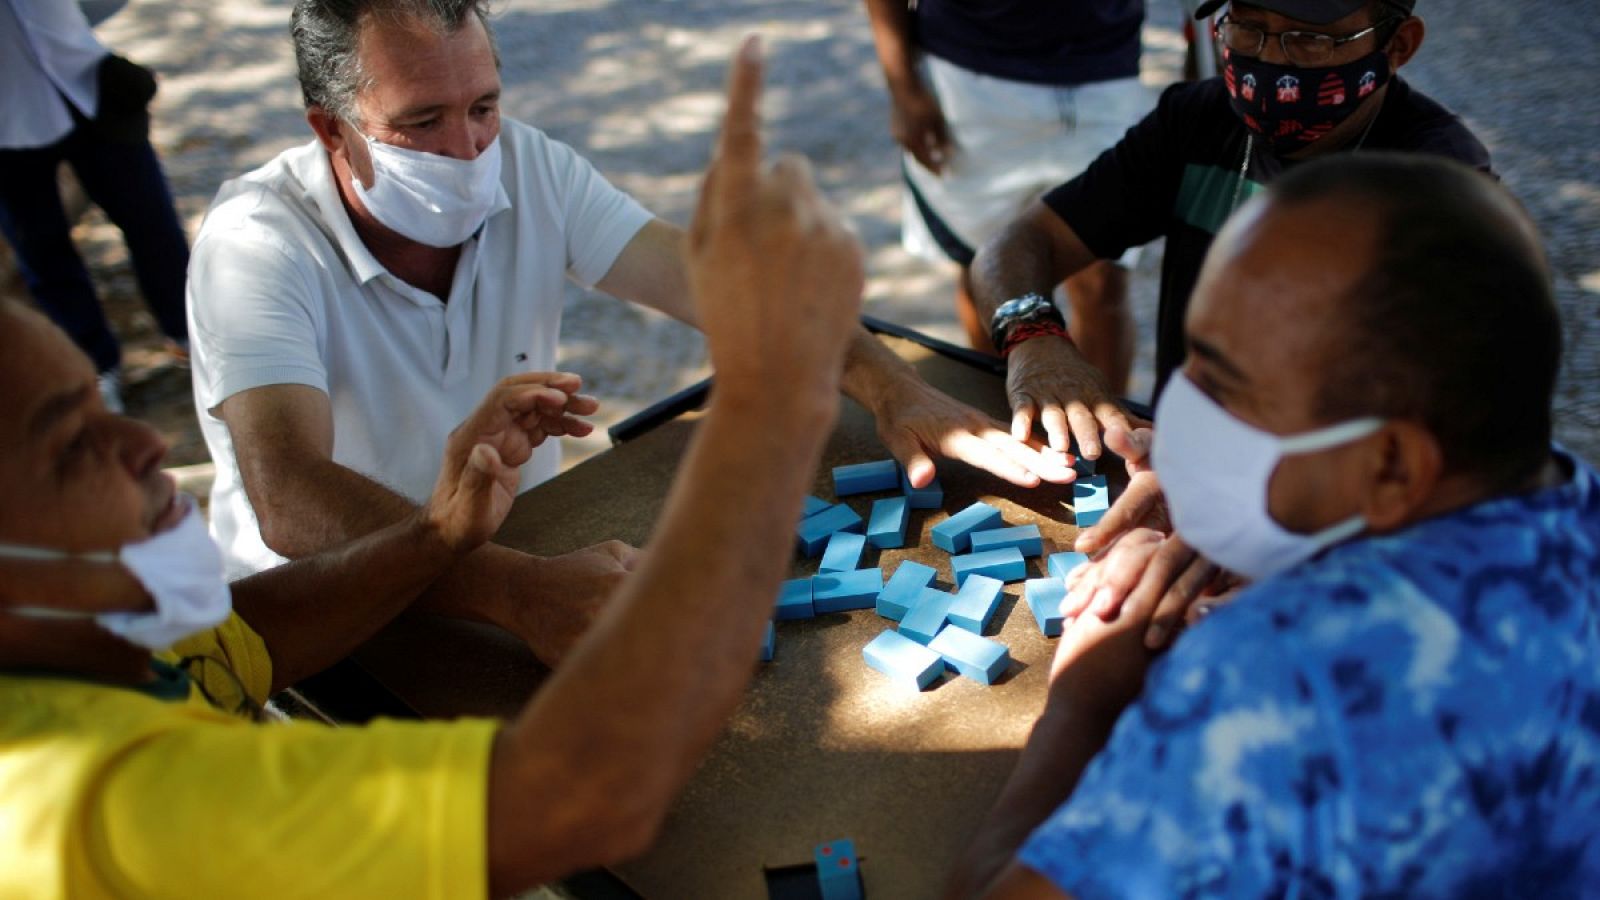 Un grupo juega dominó en una calle de Ceilandia, Brasilia, durante la pandemia